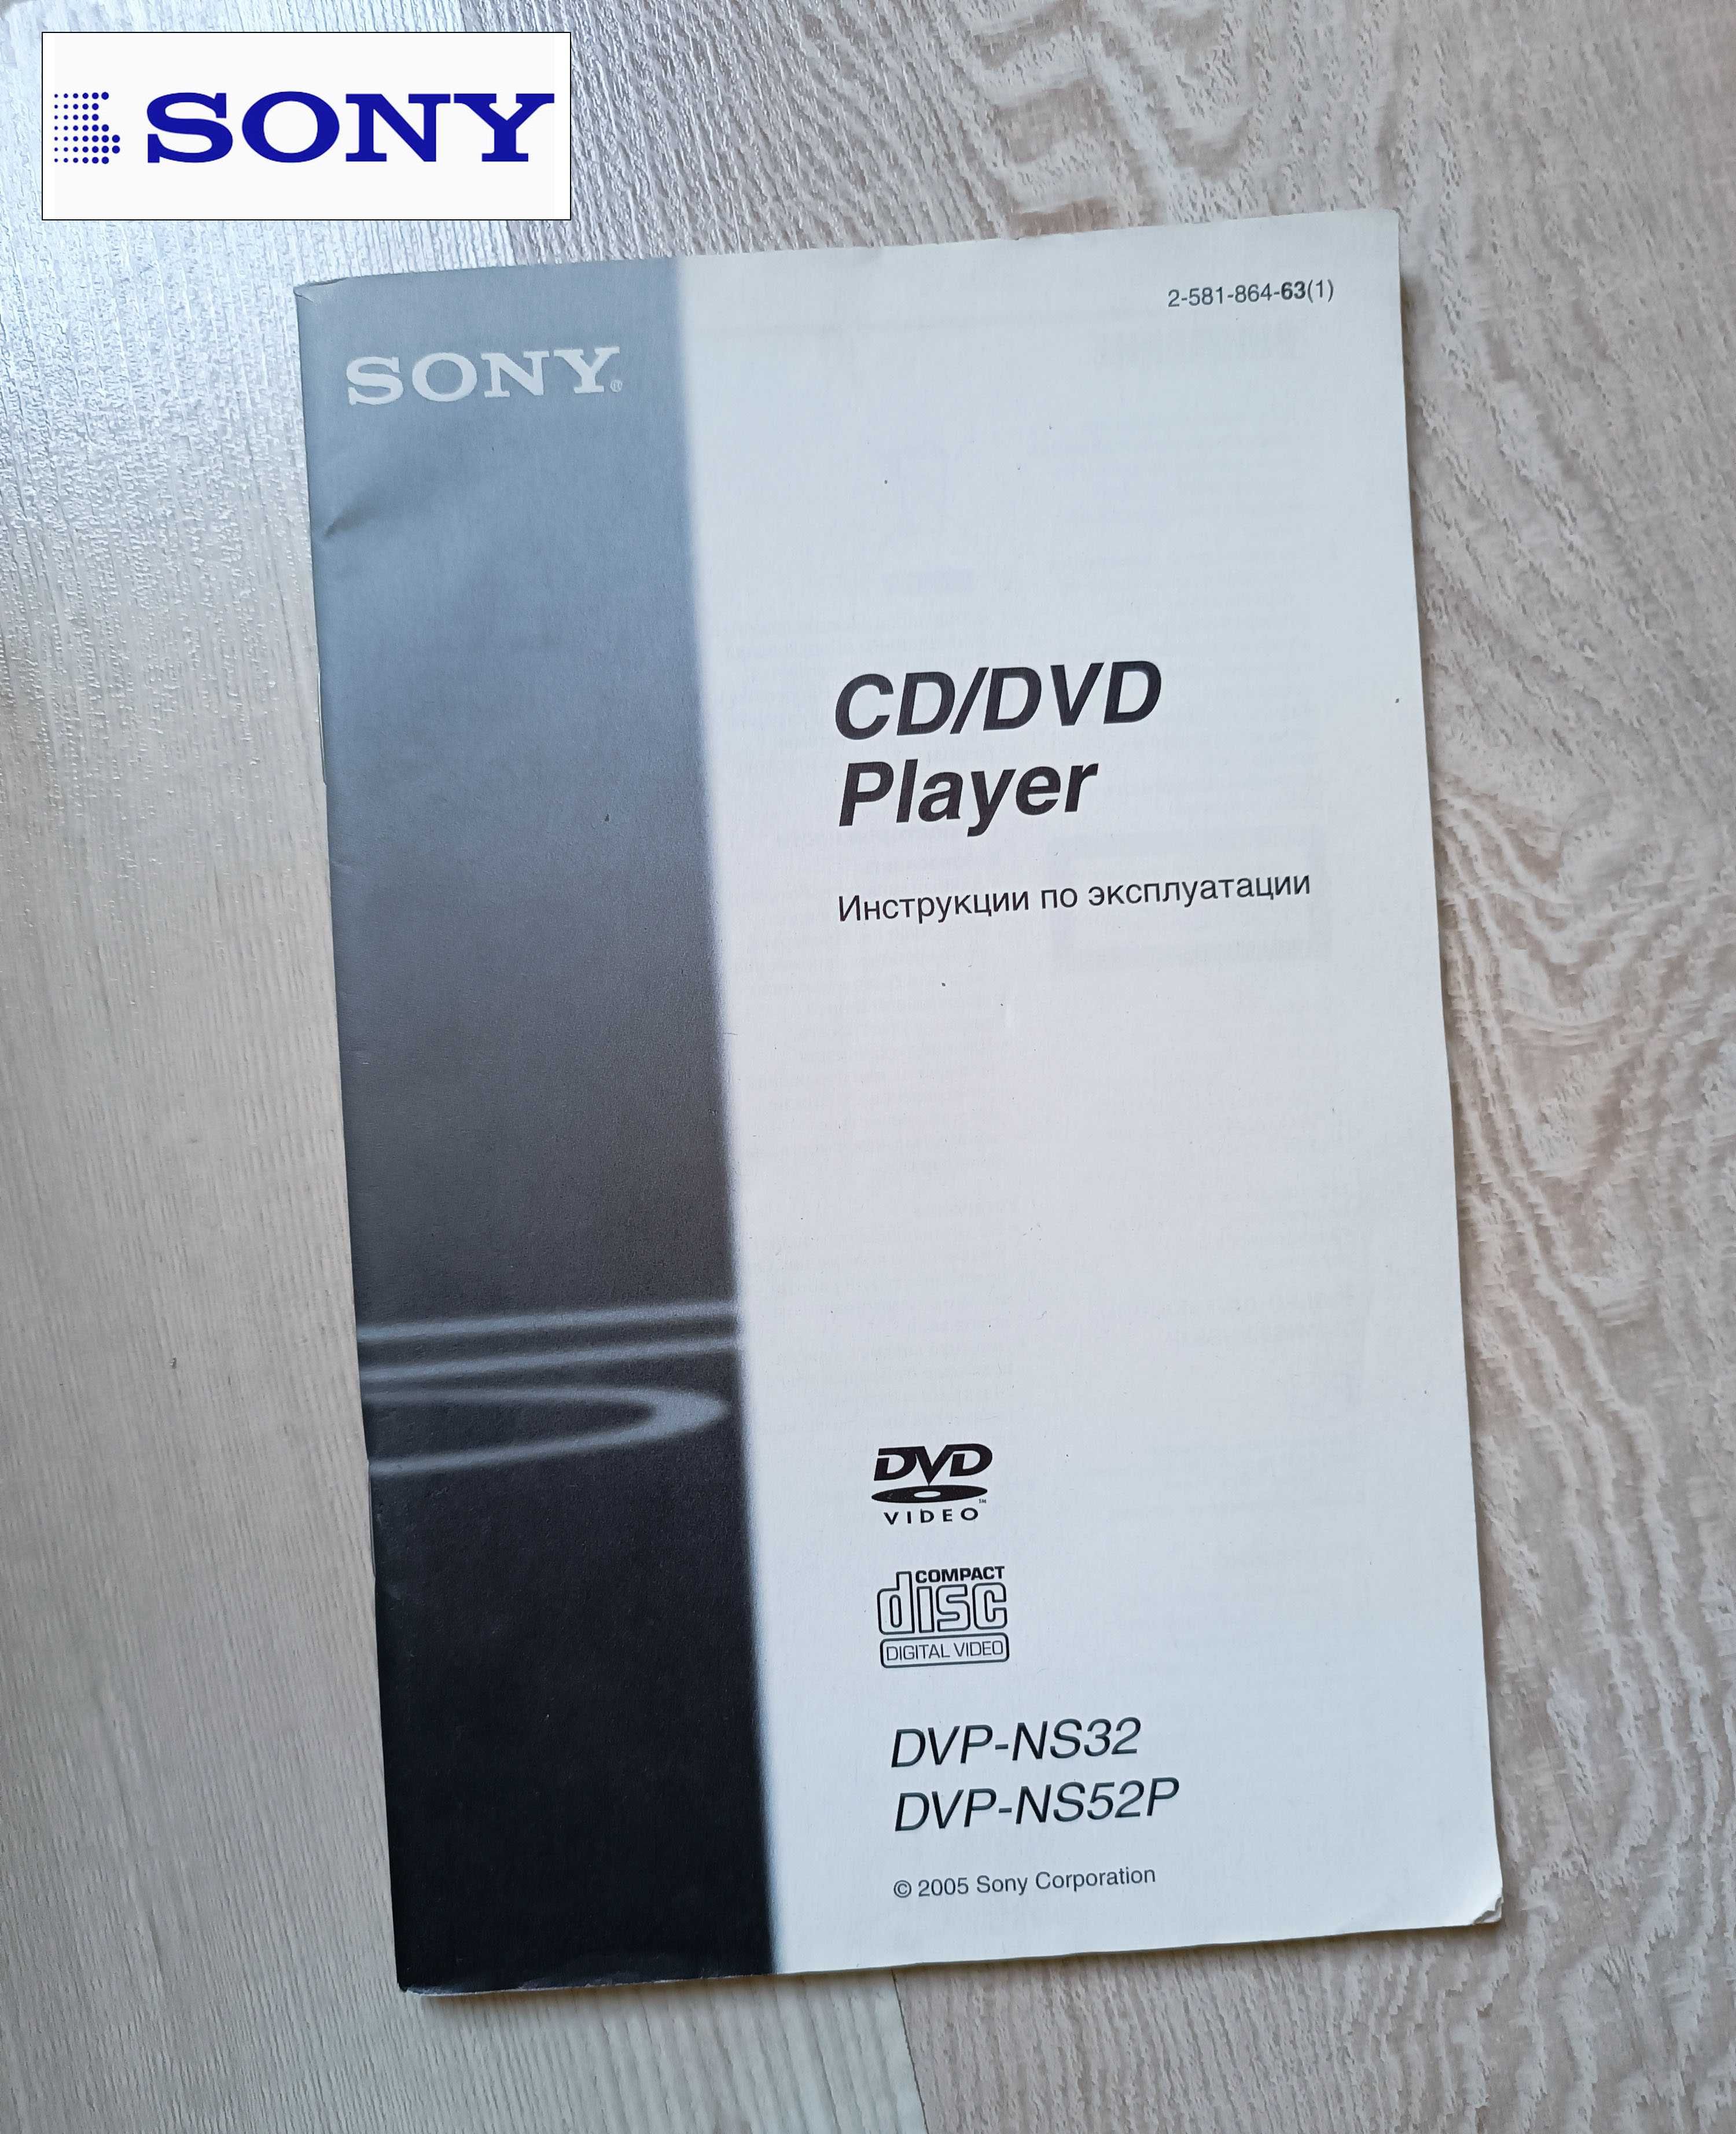 CD / DVD Player SONY модель DVP-NS52P. Идеальное состояние.